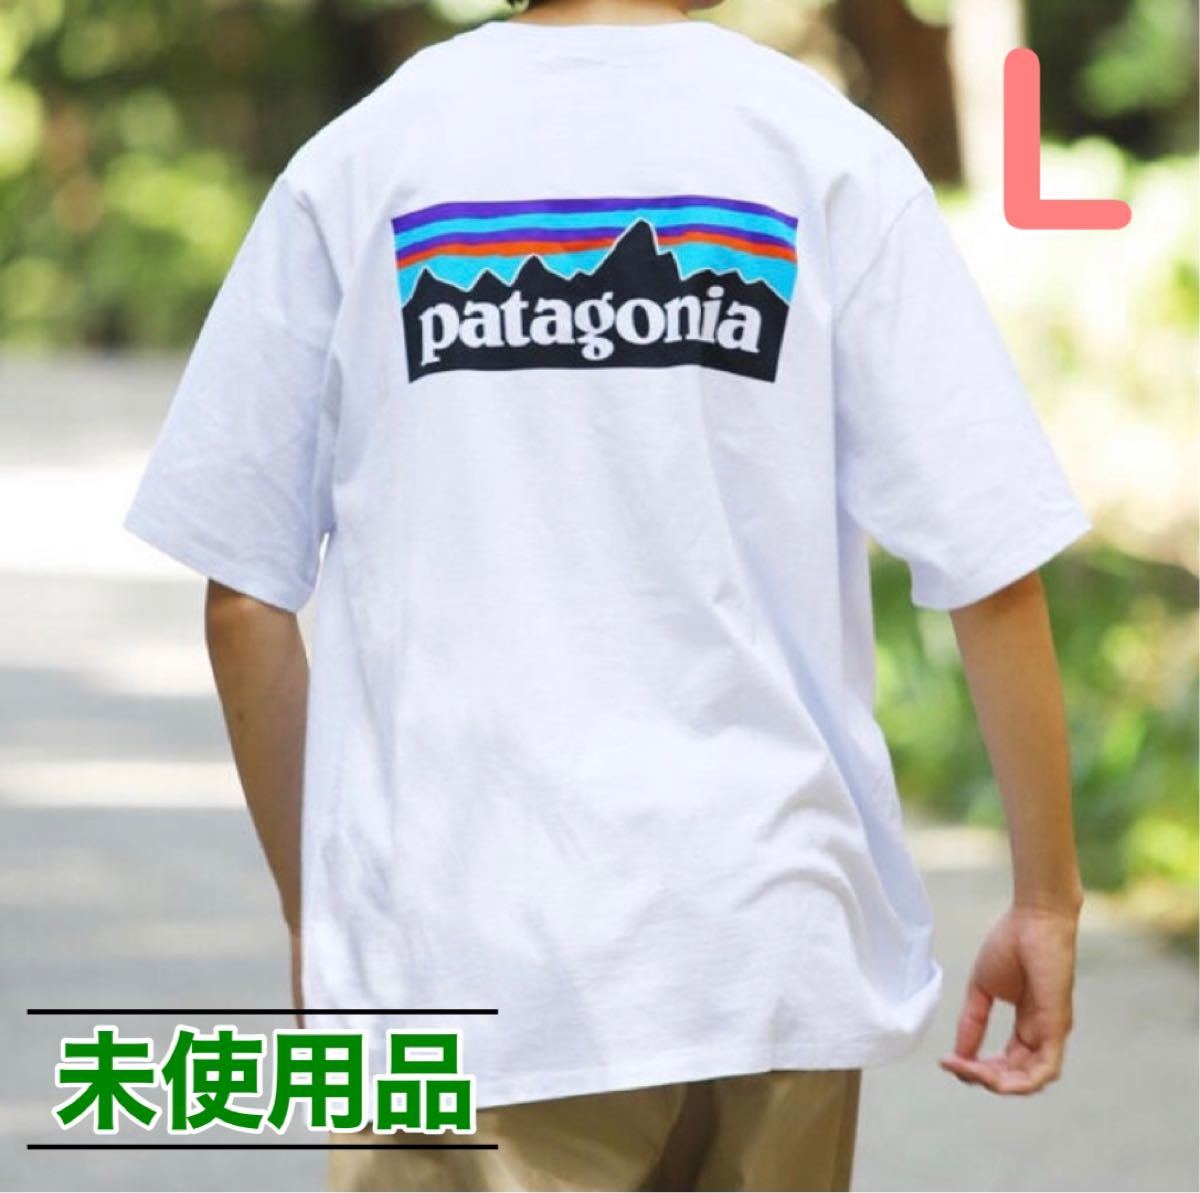 パタゴニア 長袖 ロンT Tシャツ Lサイズ ロゴ 大人気 白 ホワイト